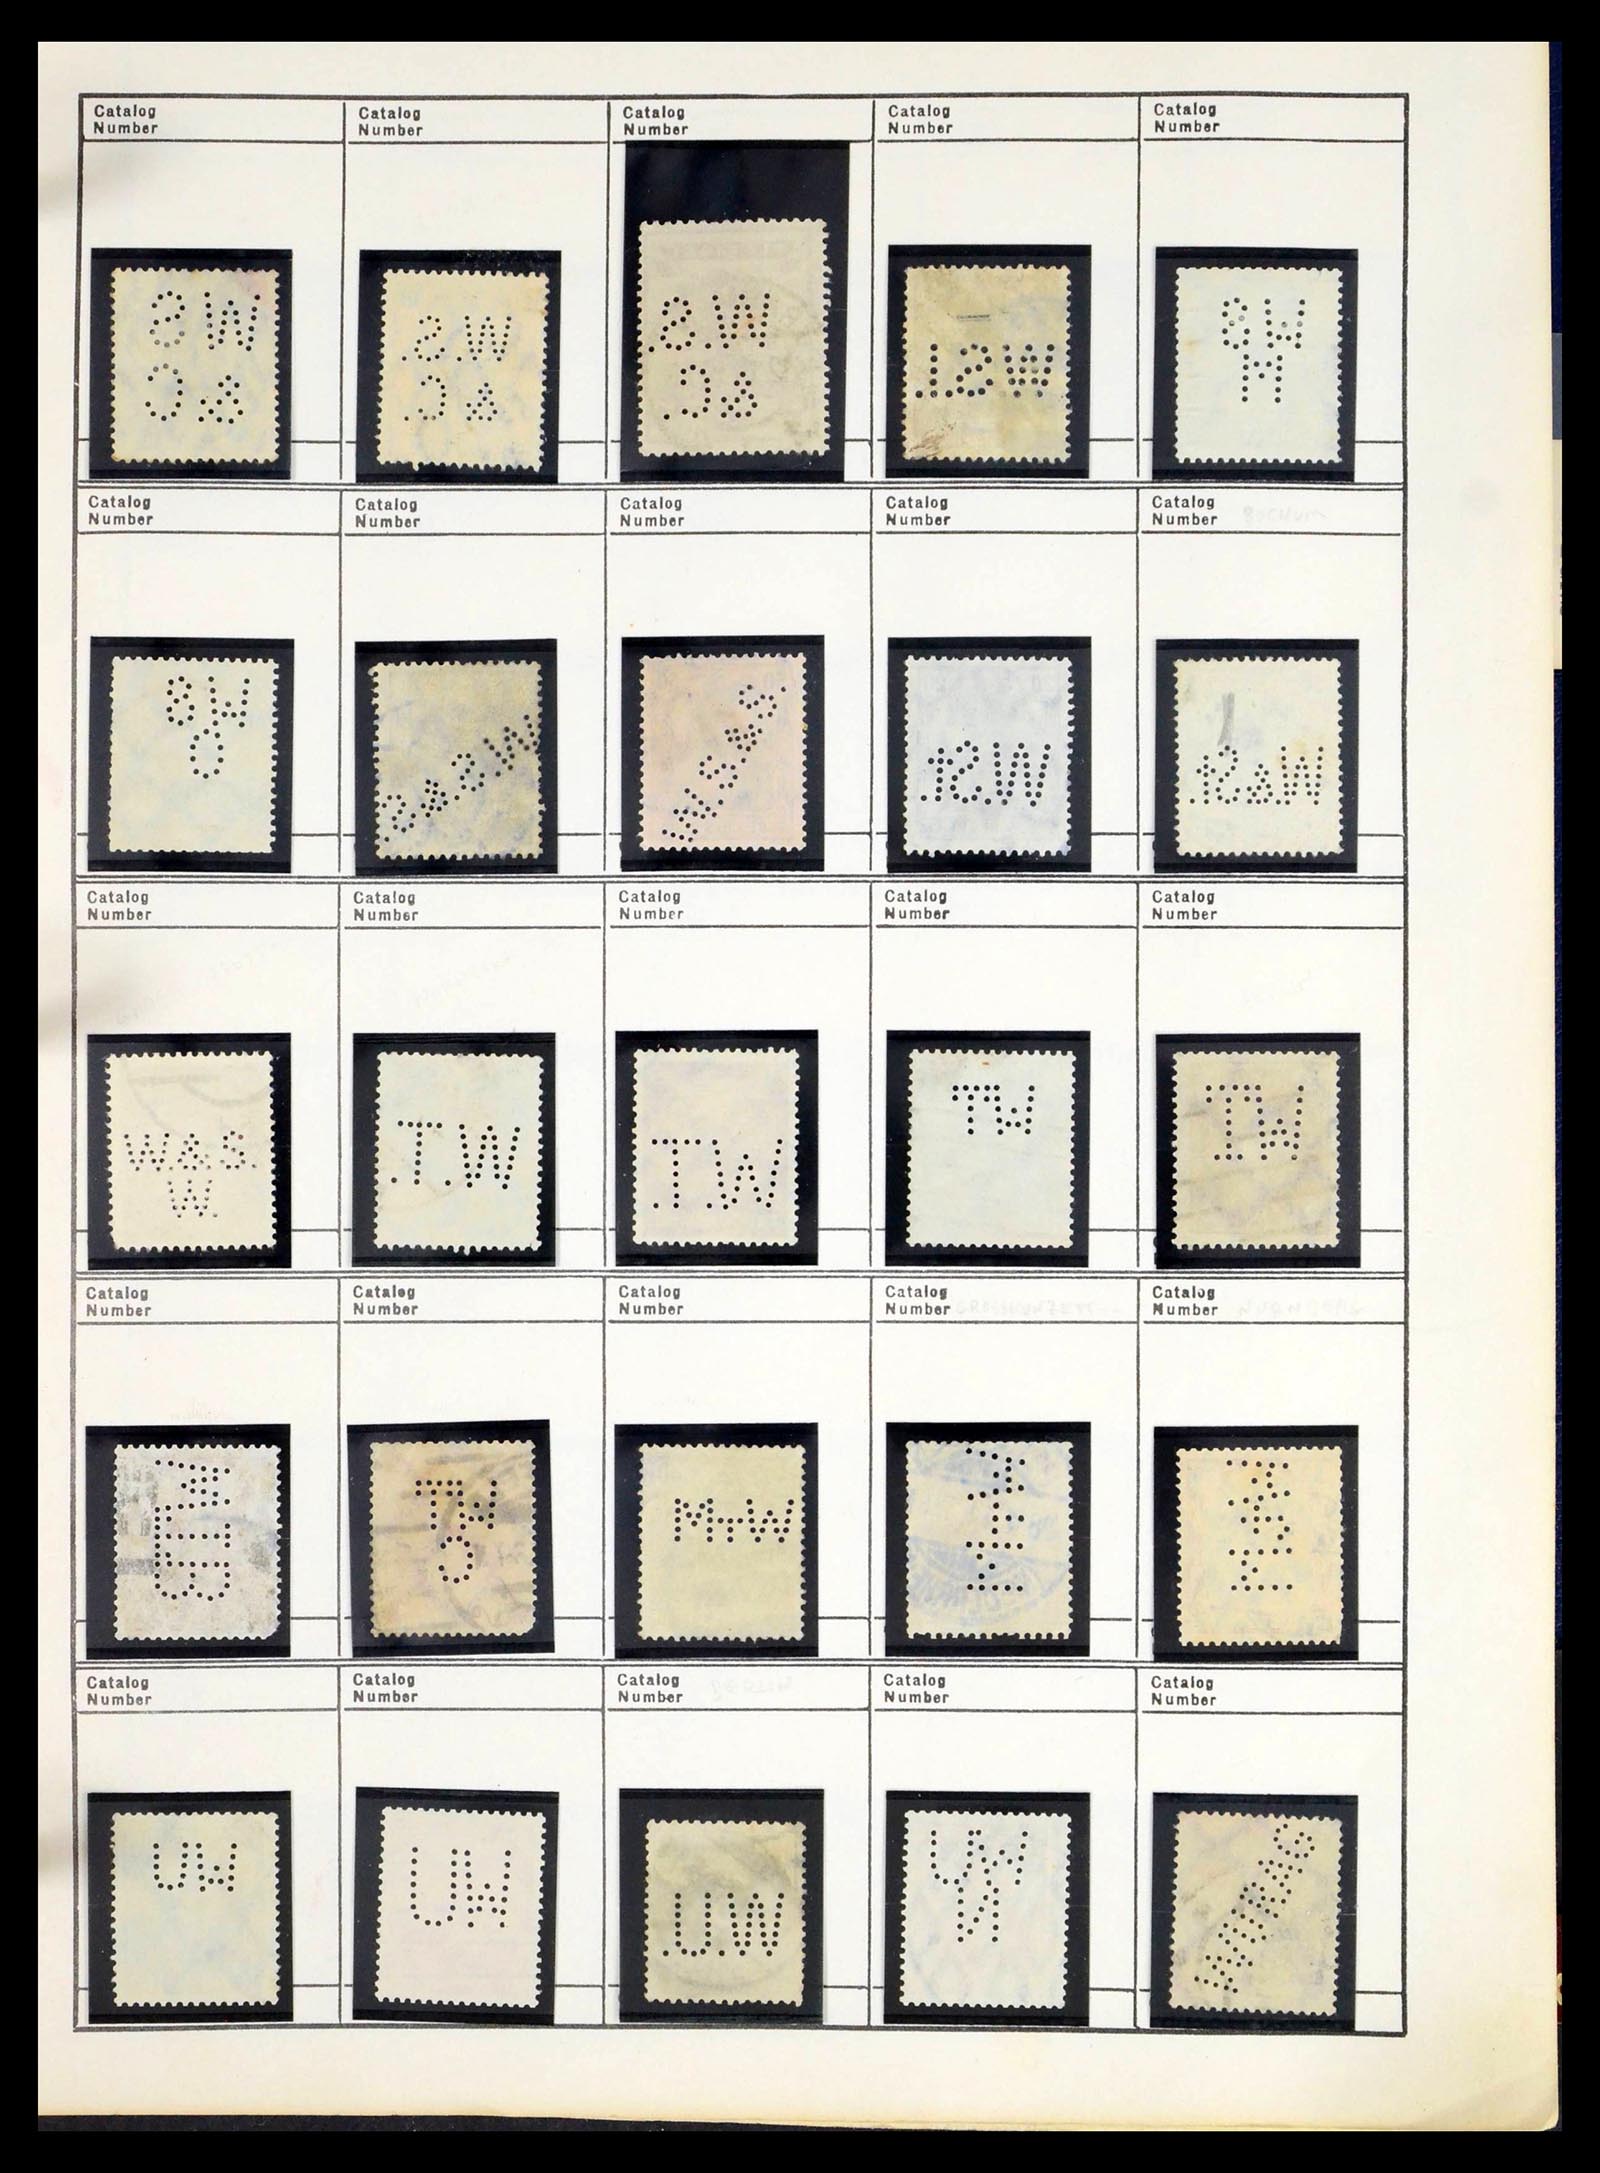 39480 0582 - Stamp collection 39480 German Reich perfins 1880-1955.